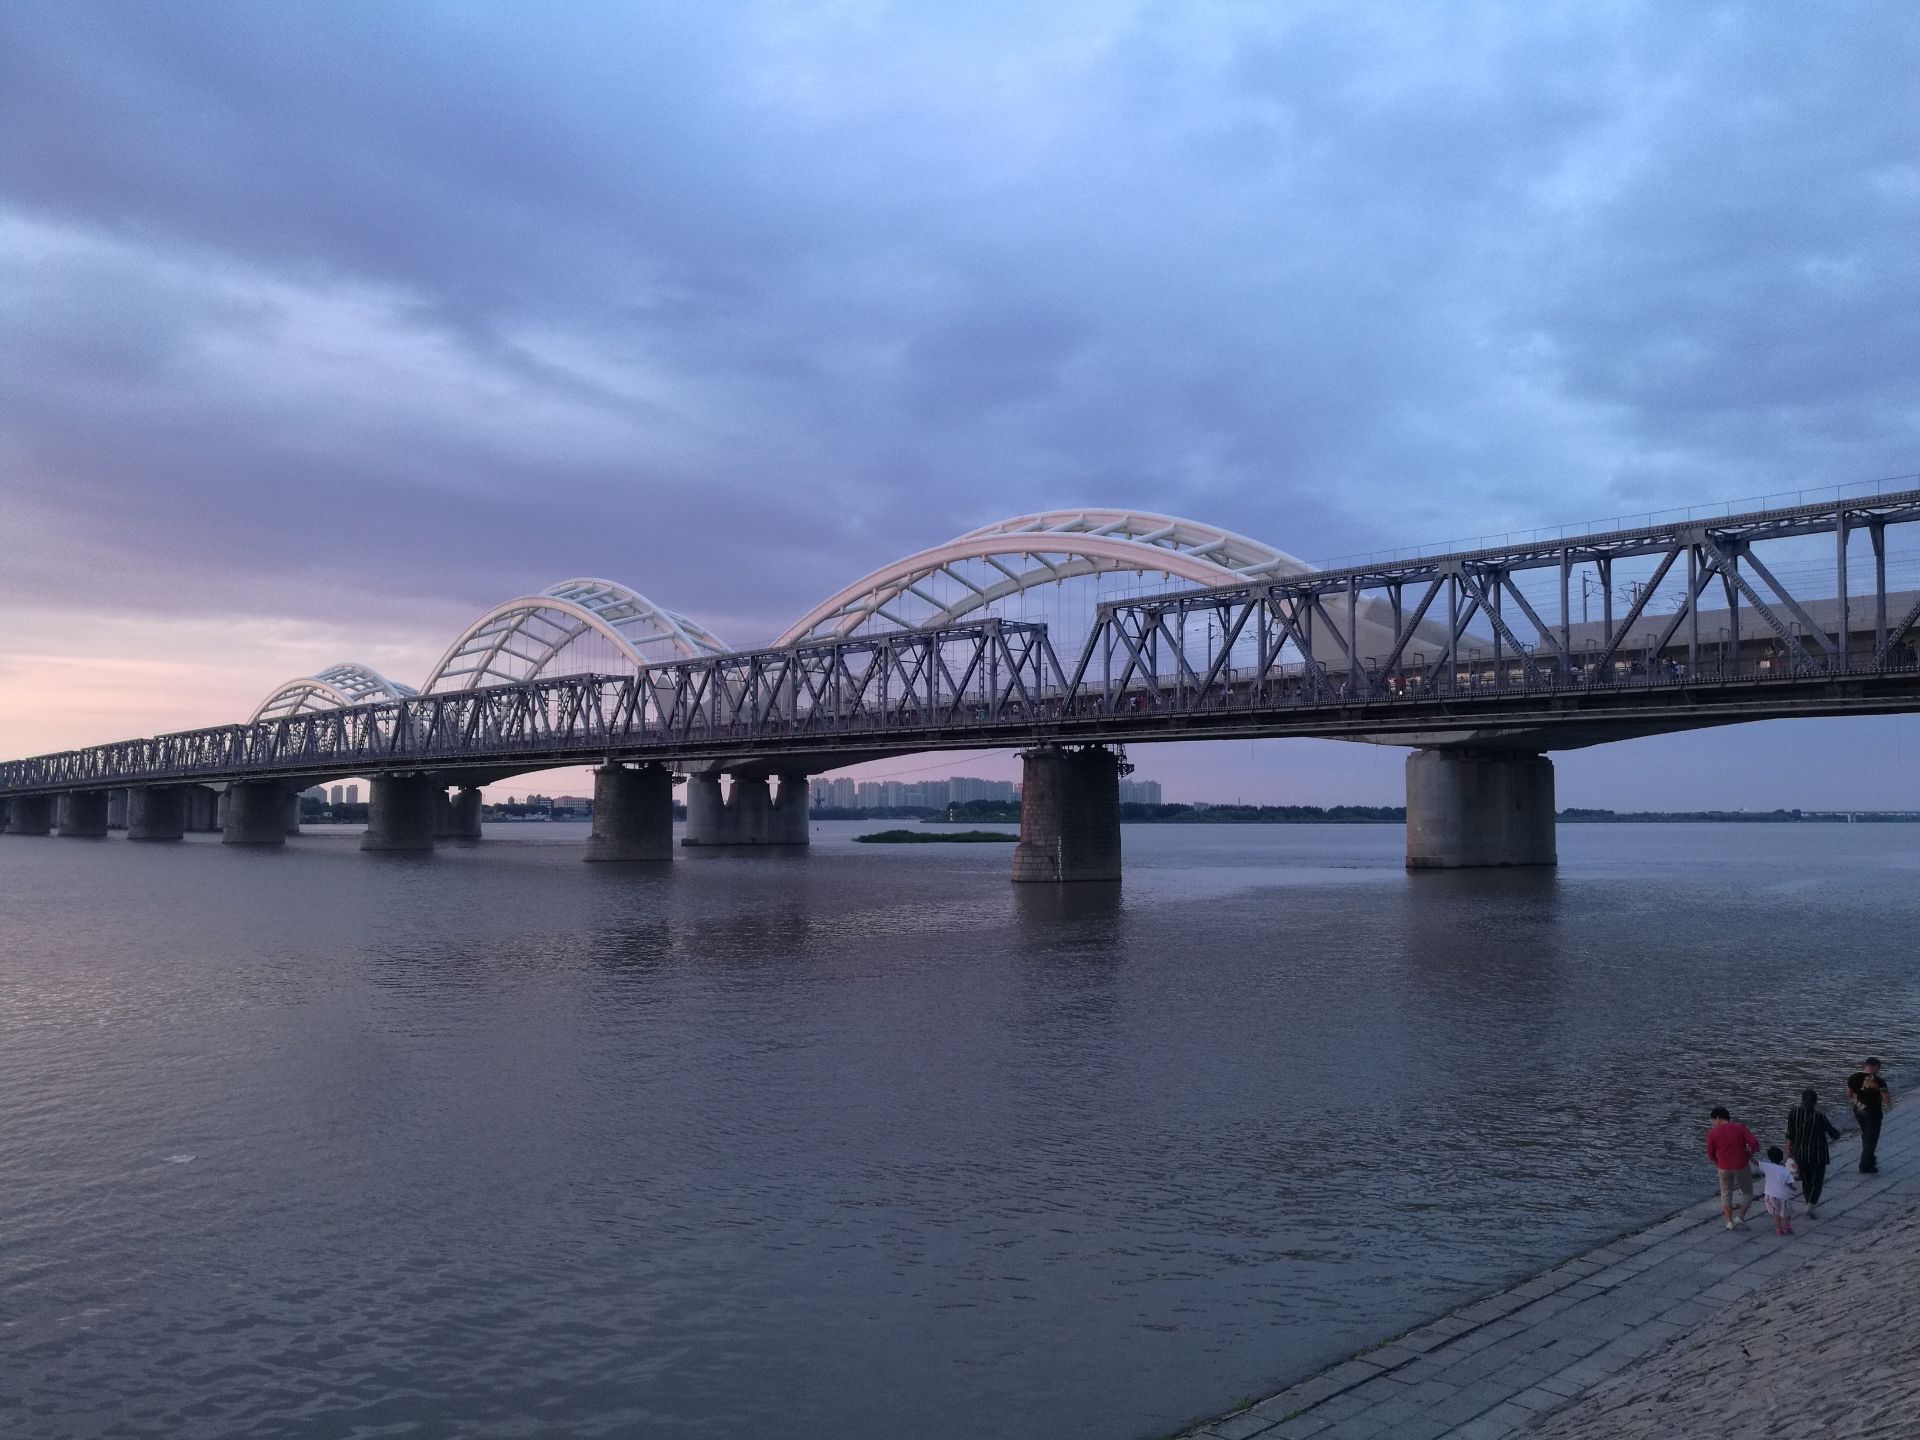 松花江大桥新桥图片